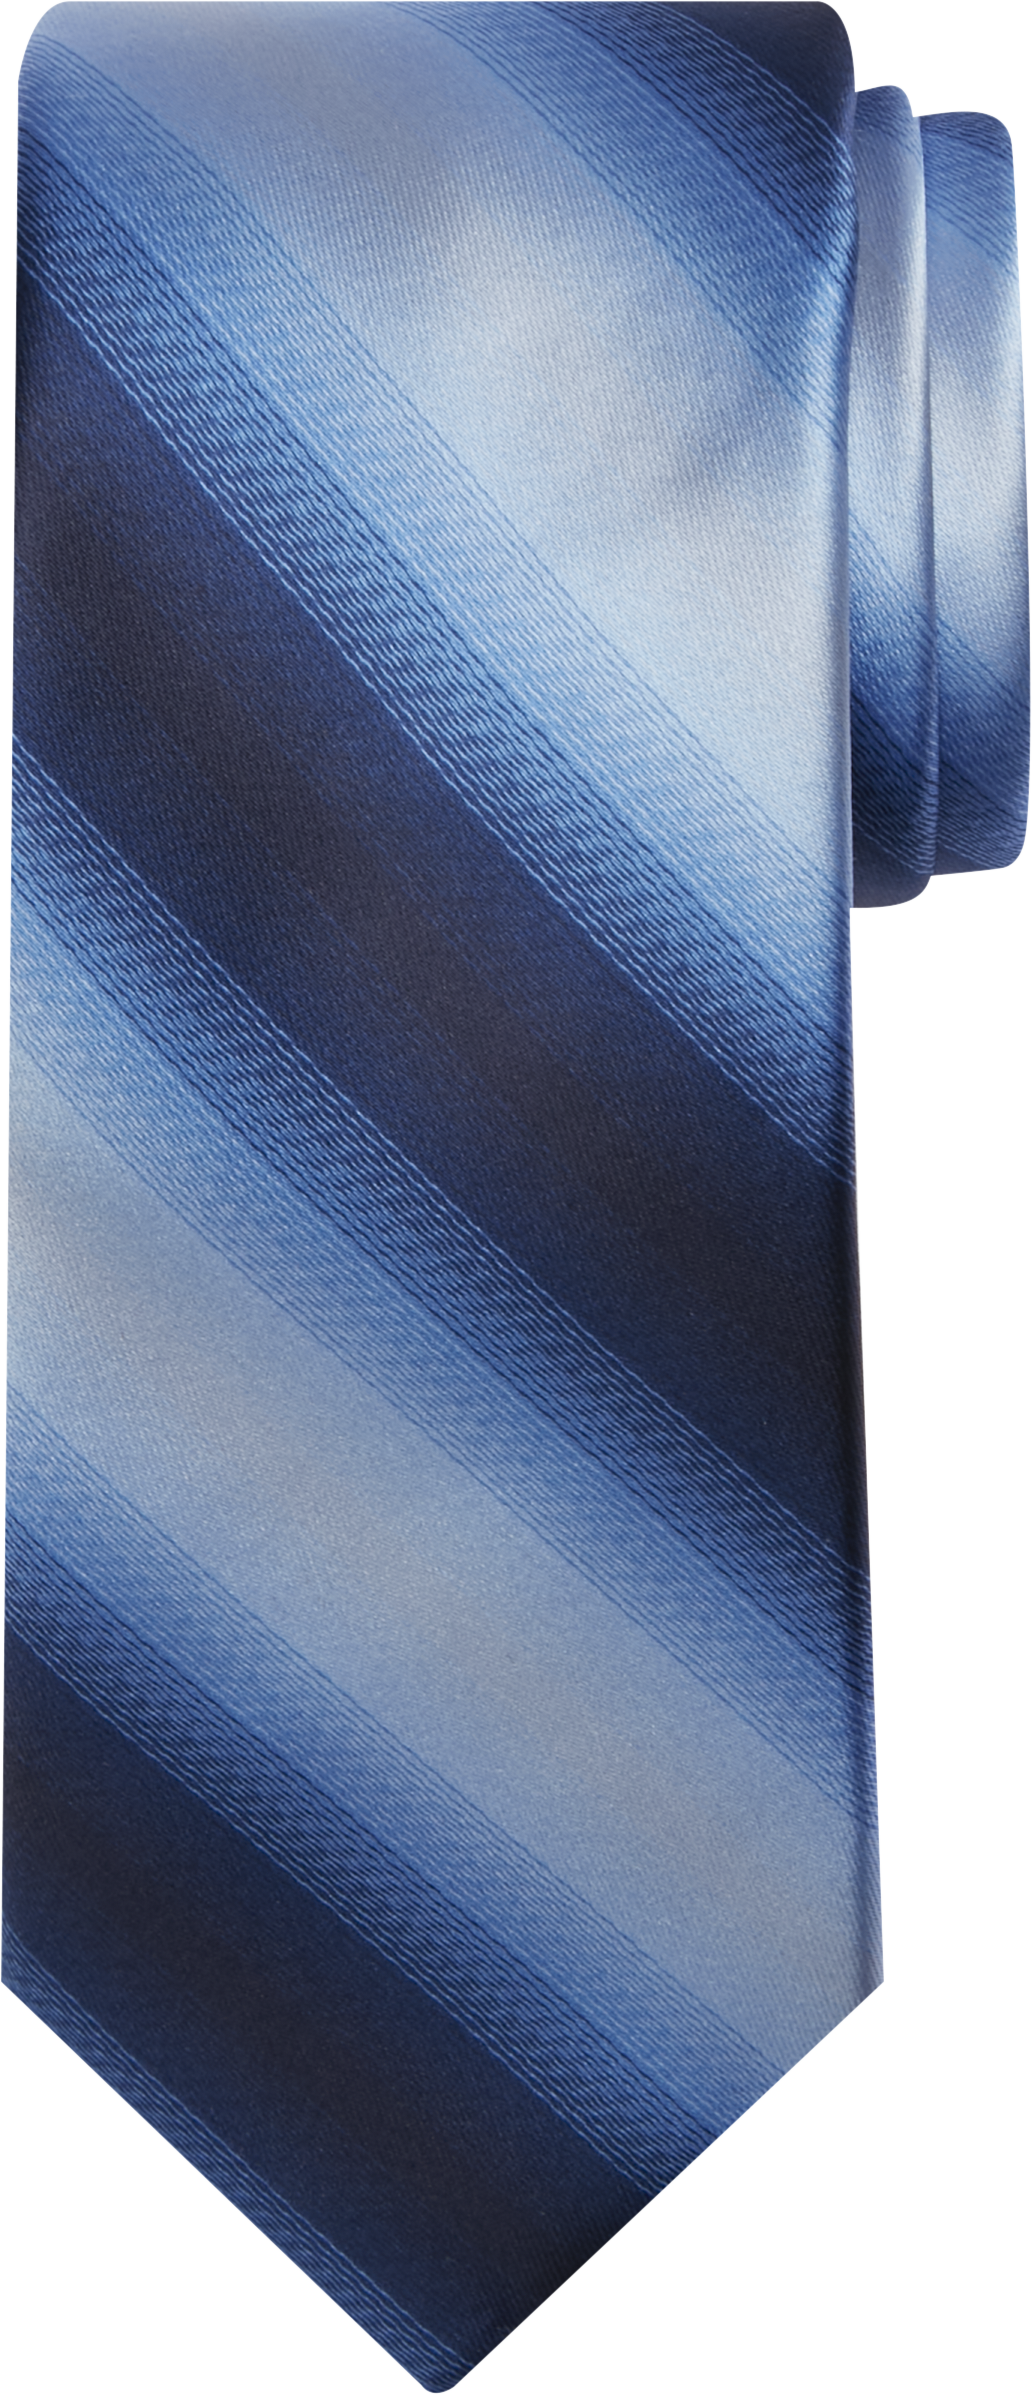 Narrow Shaded Stripe Tie